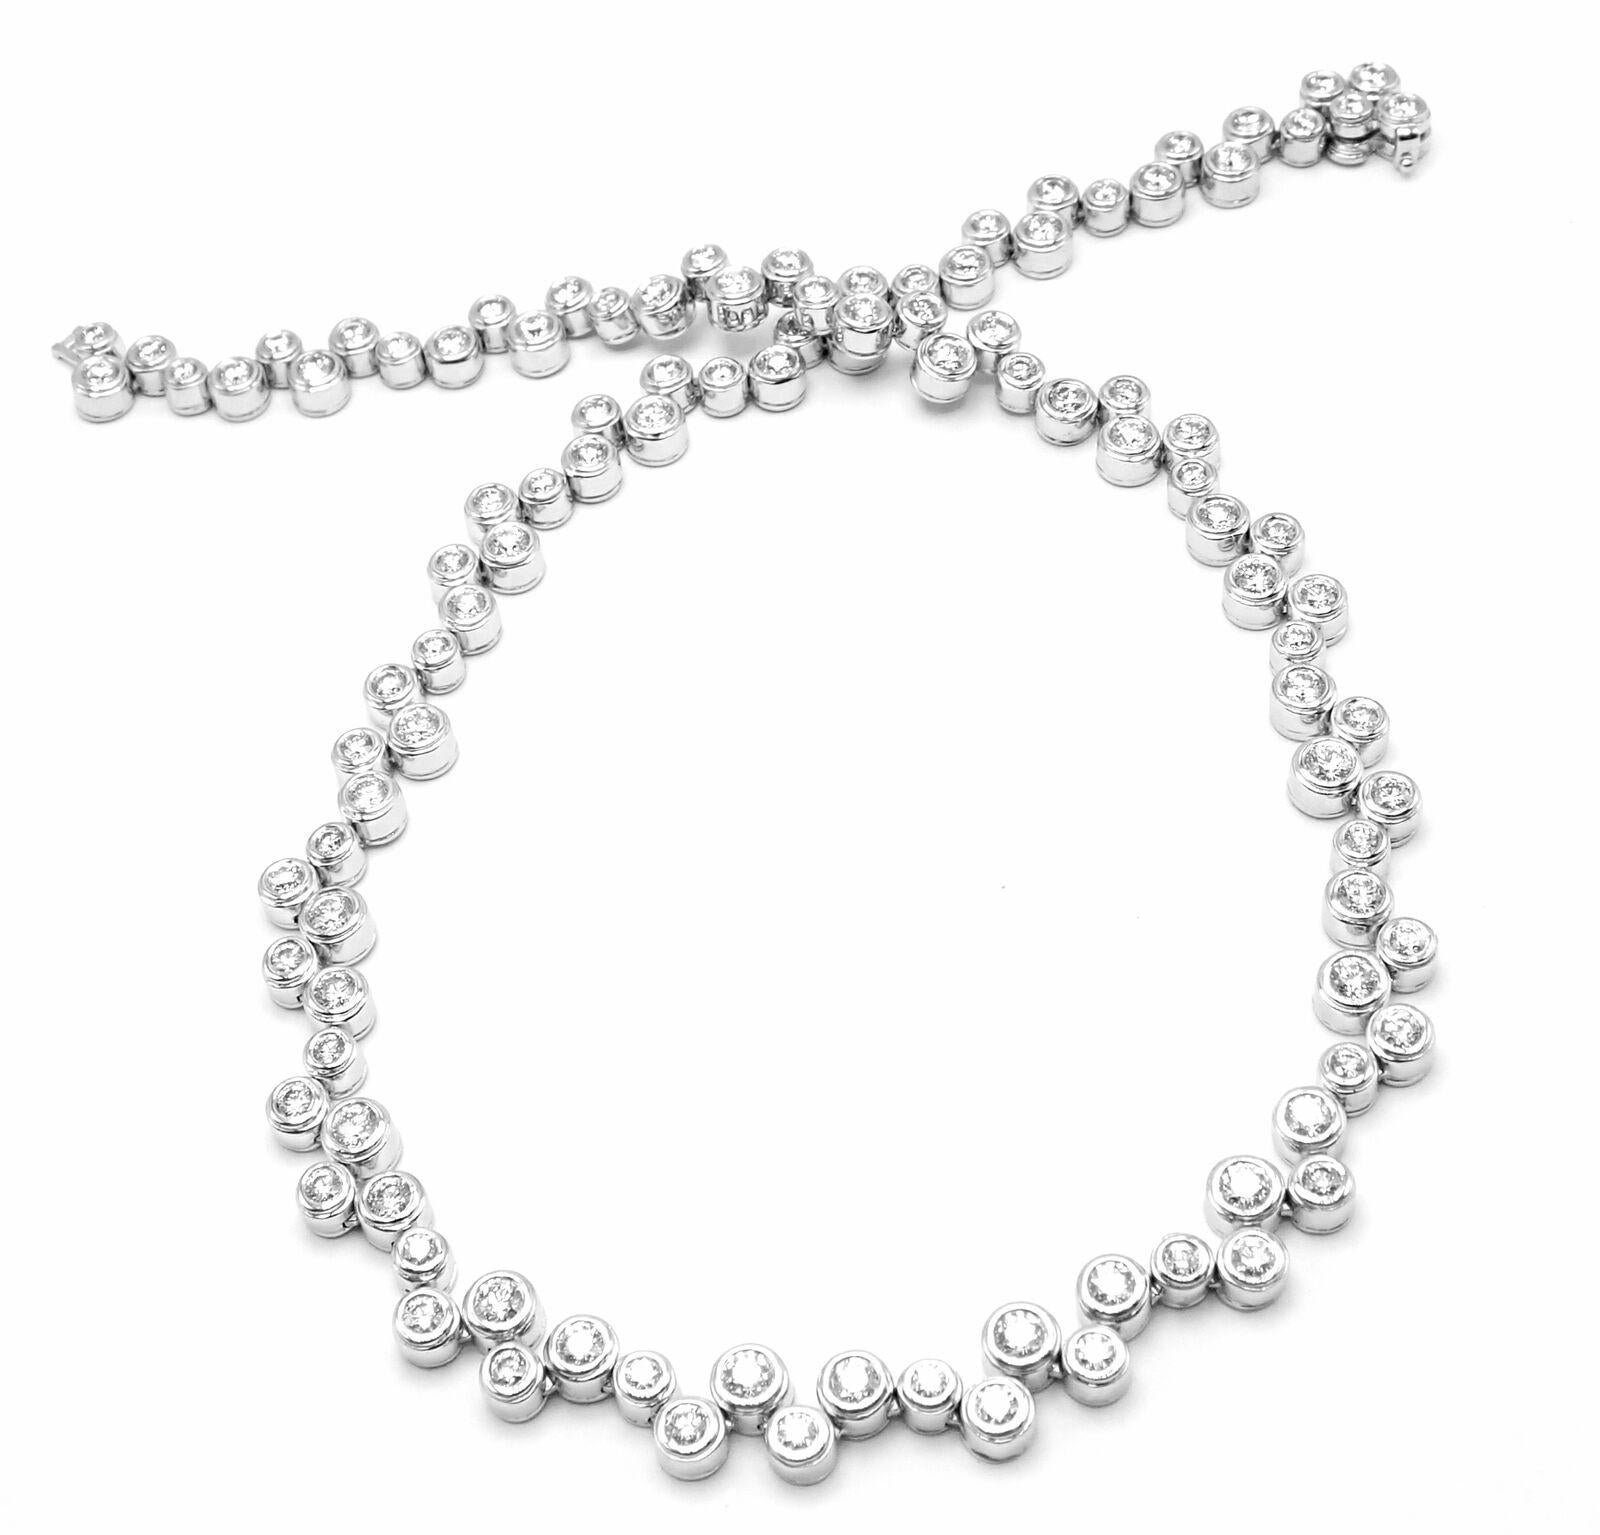 Platin-Diamant-Blasen-Halskette von Tiffany & Co. 
Mit 108 runden Diamanten im Brillantschliff mit Reinheit VS1 und Farbe G beträgt das Gesamtgewicht ca. 10ct.
Einzelheiten: 
Länge: 15